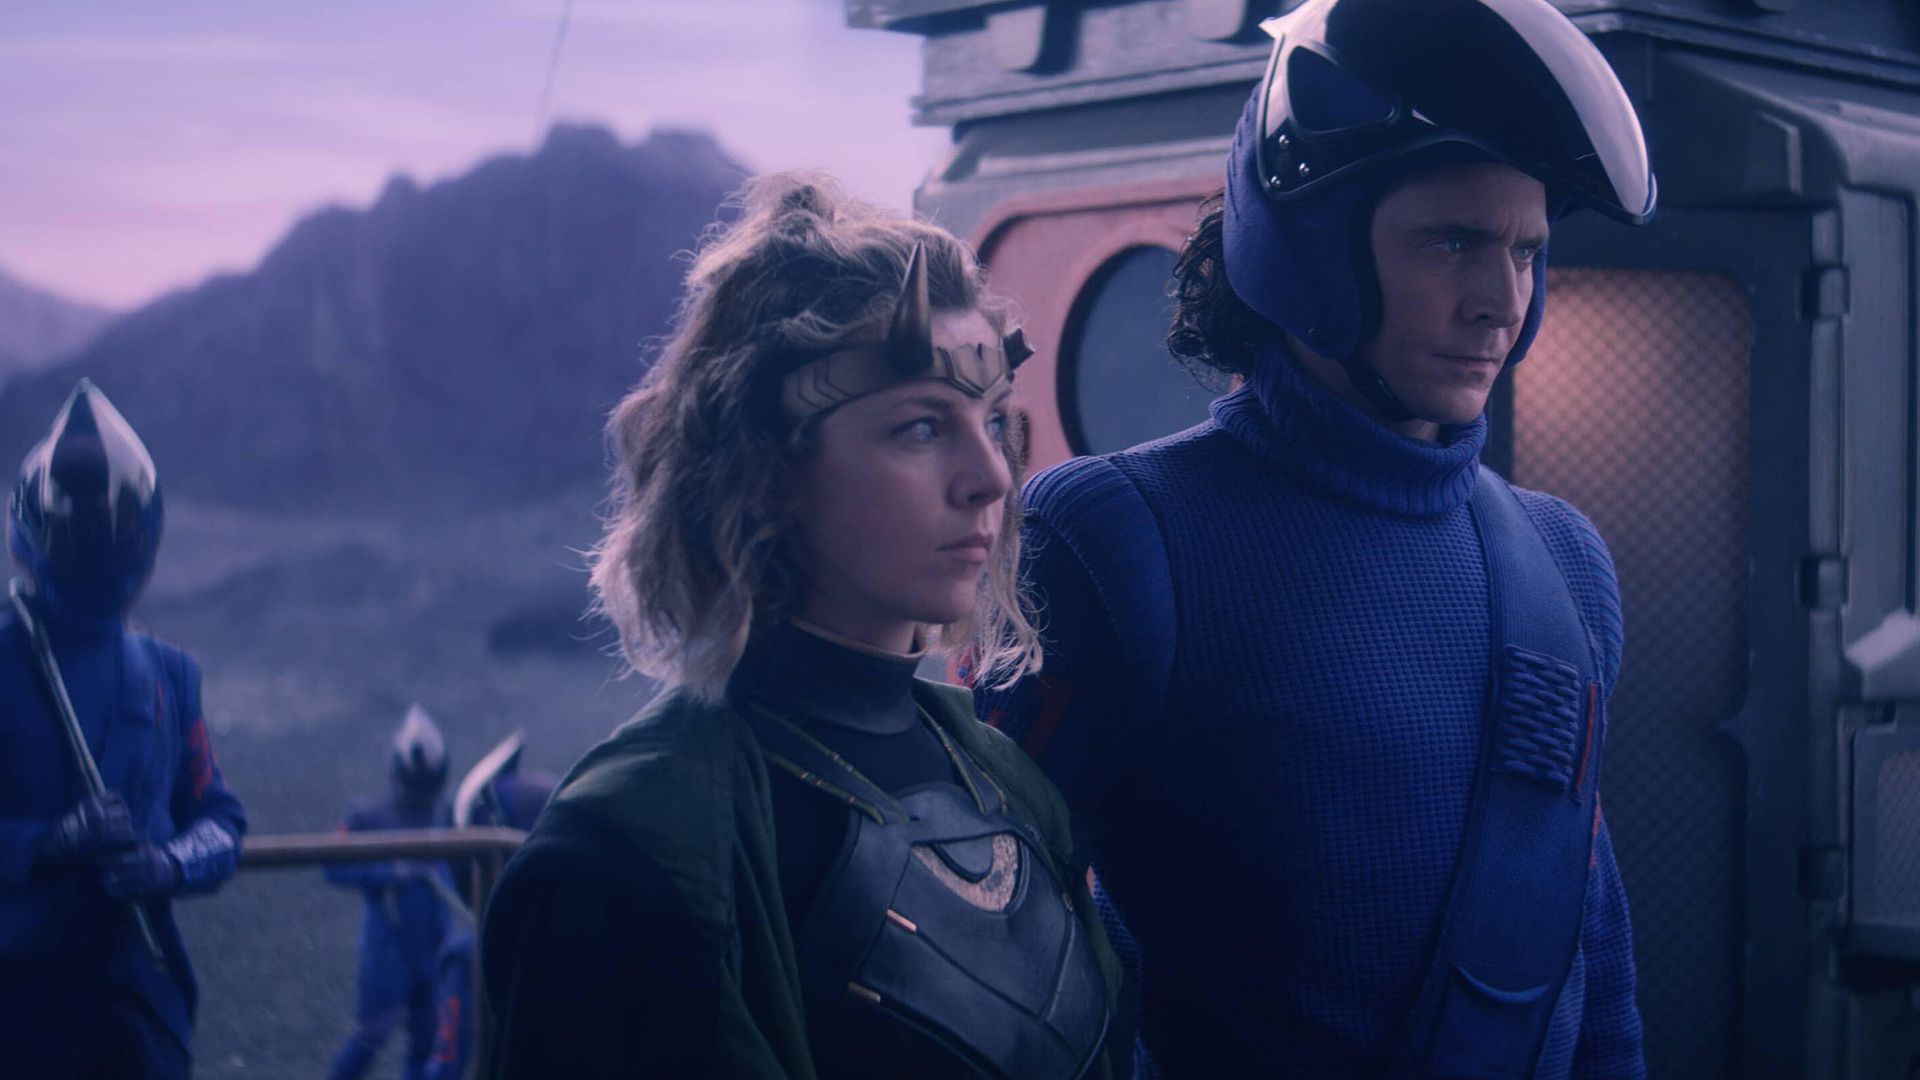 تام هیدلستون در نقش لوکی در ظاهر نیروهای نگهبان سیاره در حال بردن سوفیا دی مارتینو در نقش سیلوی به‌عنوان زندانی در قطار در قسمت سوم سریال Loki